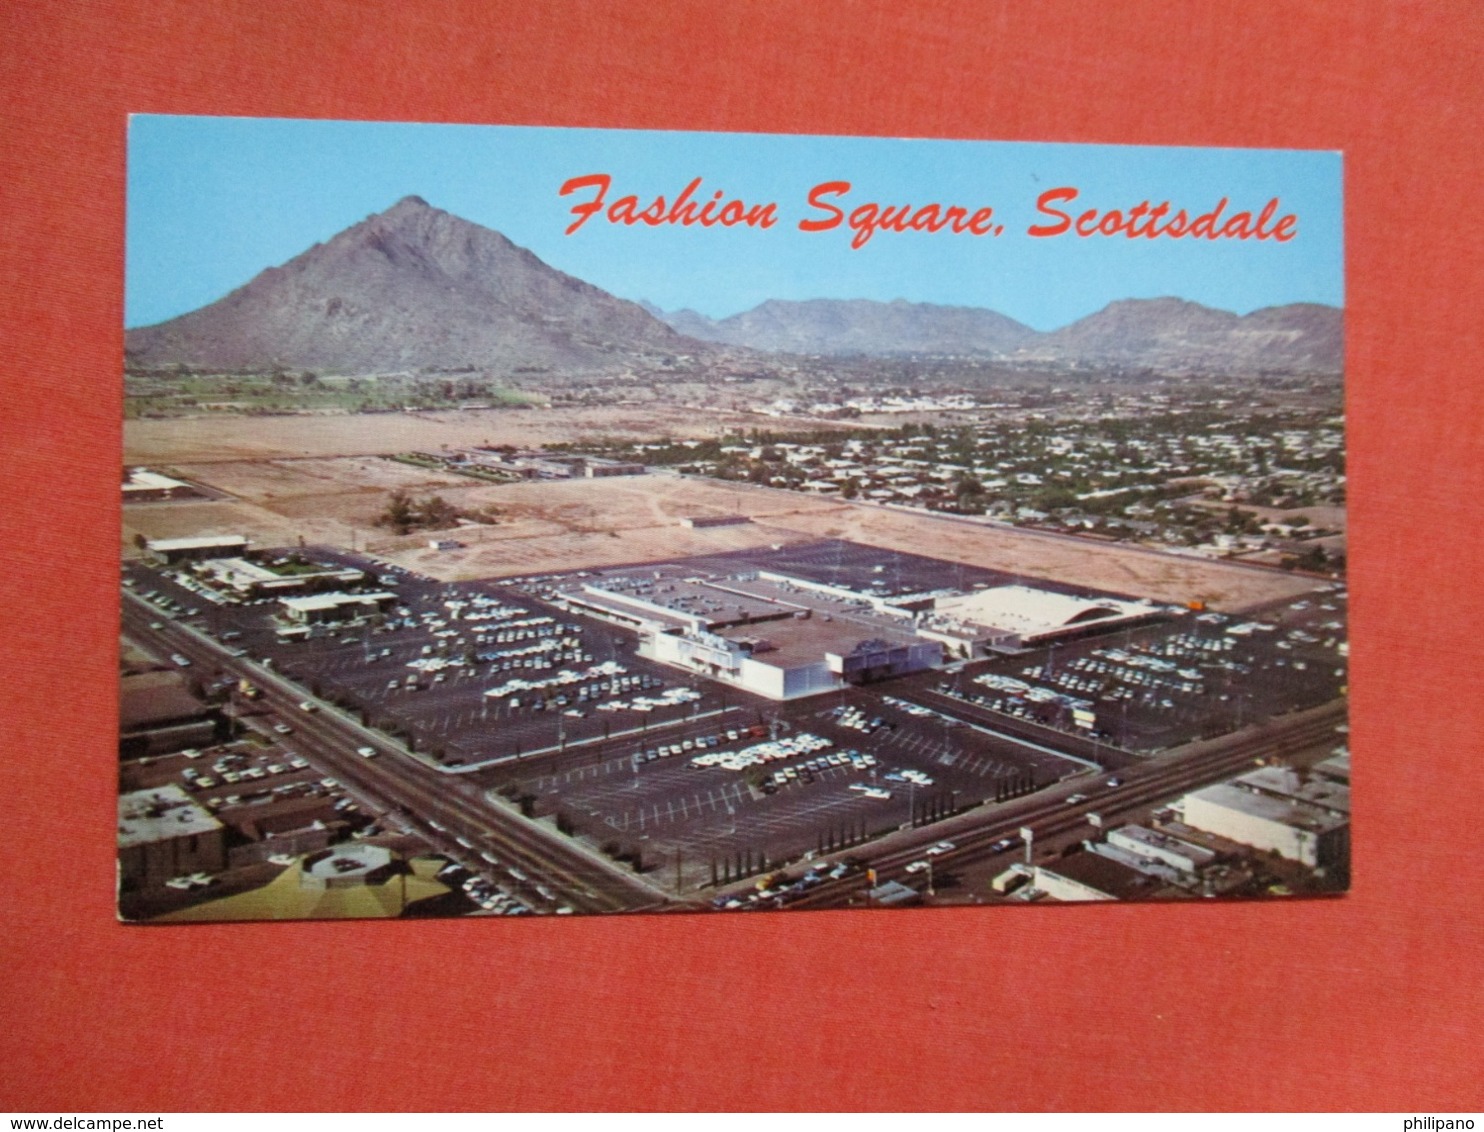 Fashion Square Shopping  Center  Scottsdale Arizona    Ref 3617 - Scottsdale